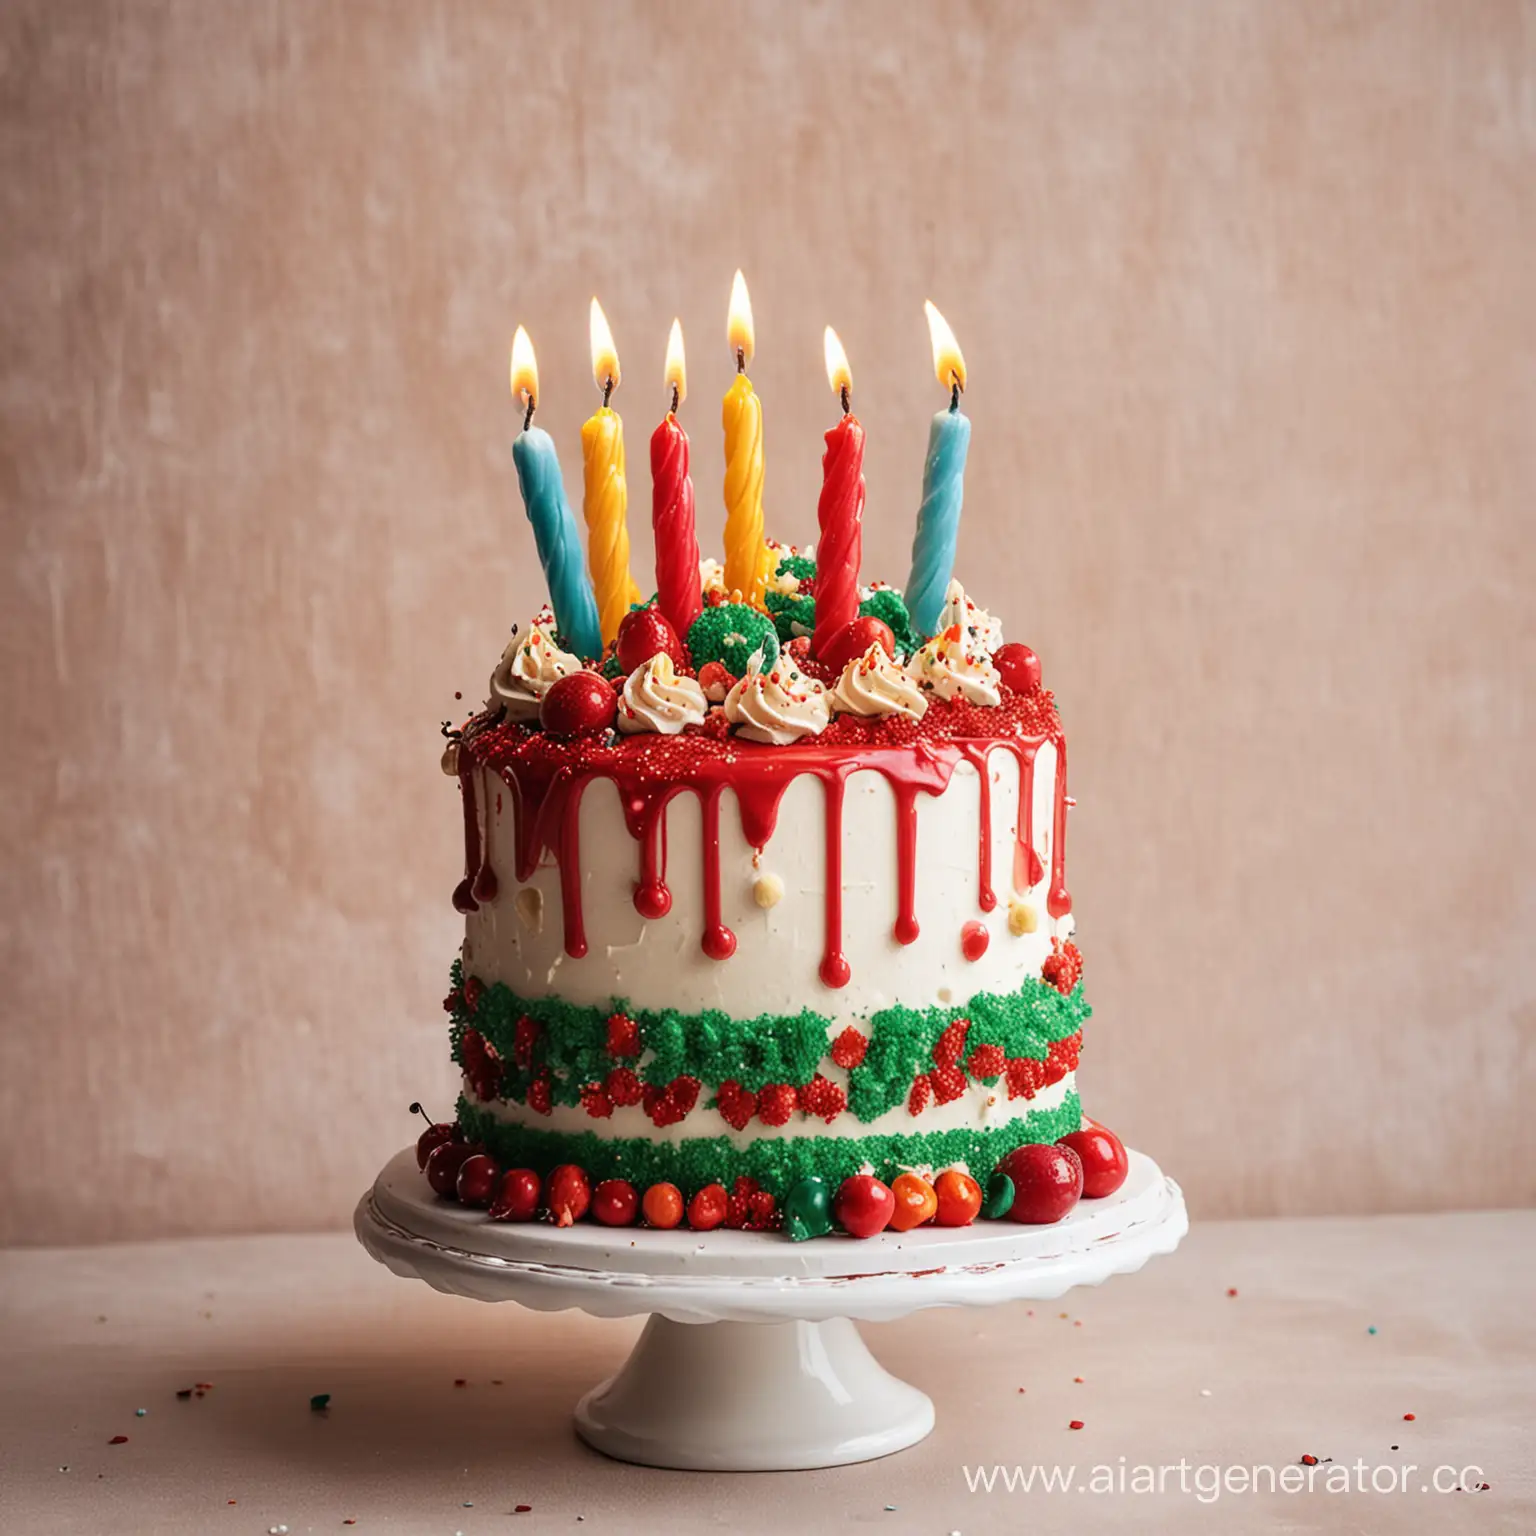 Festive-Birthday-Cake-Celebration